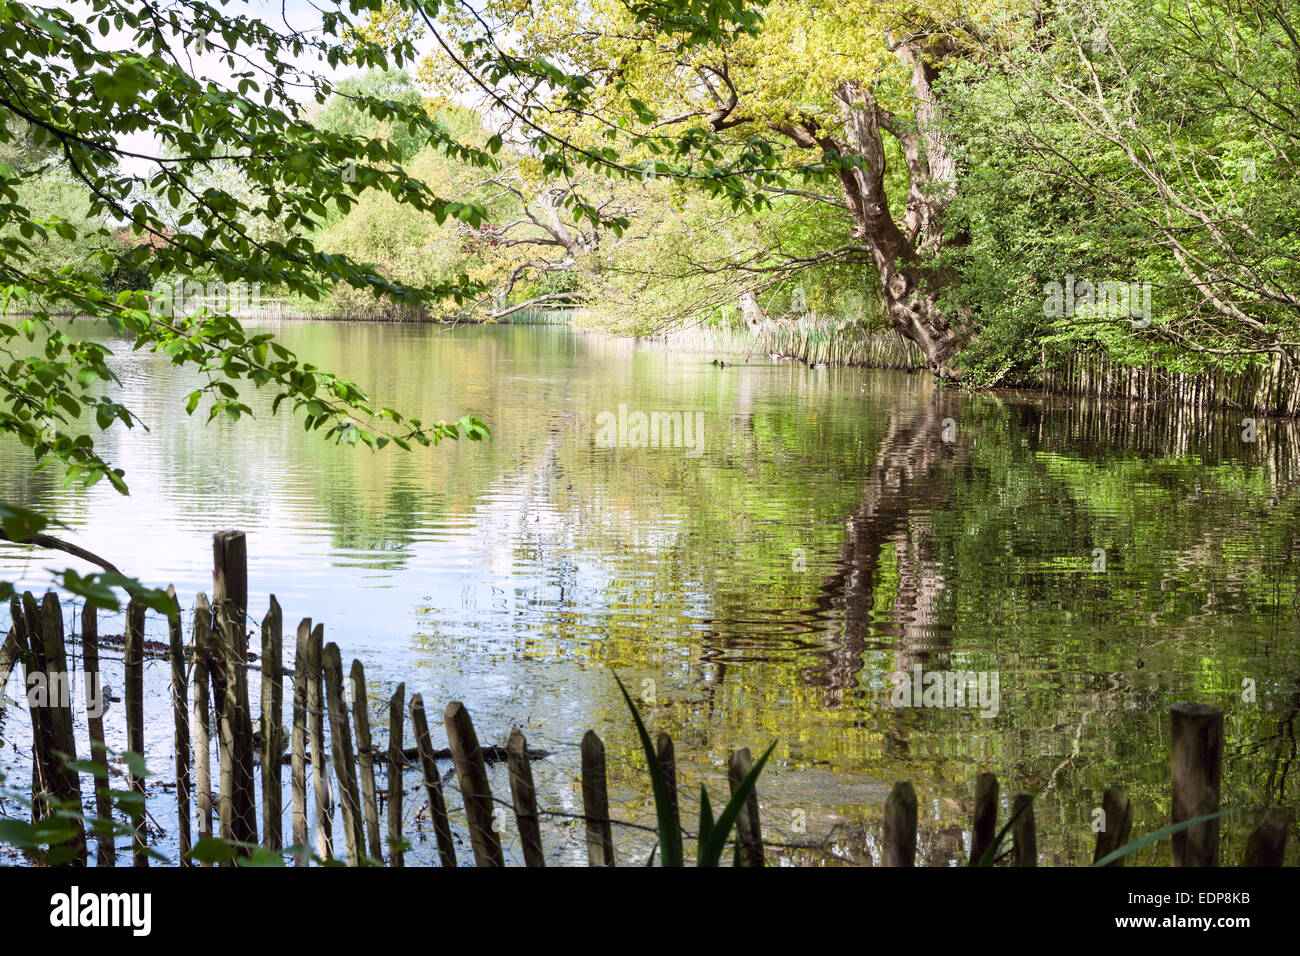 Ein schöner See - Danbury Country Park - UK Stockfoto